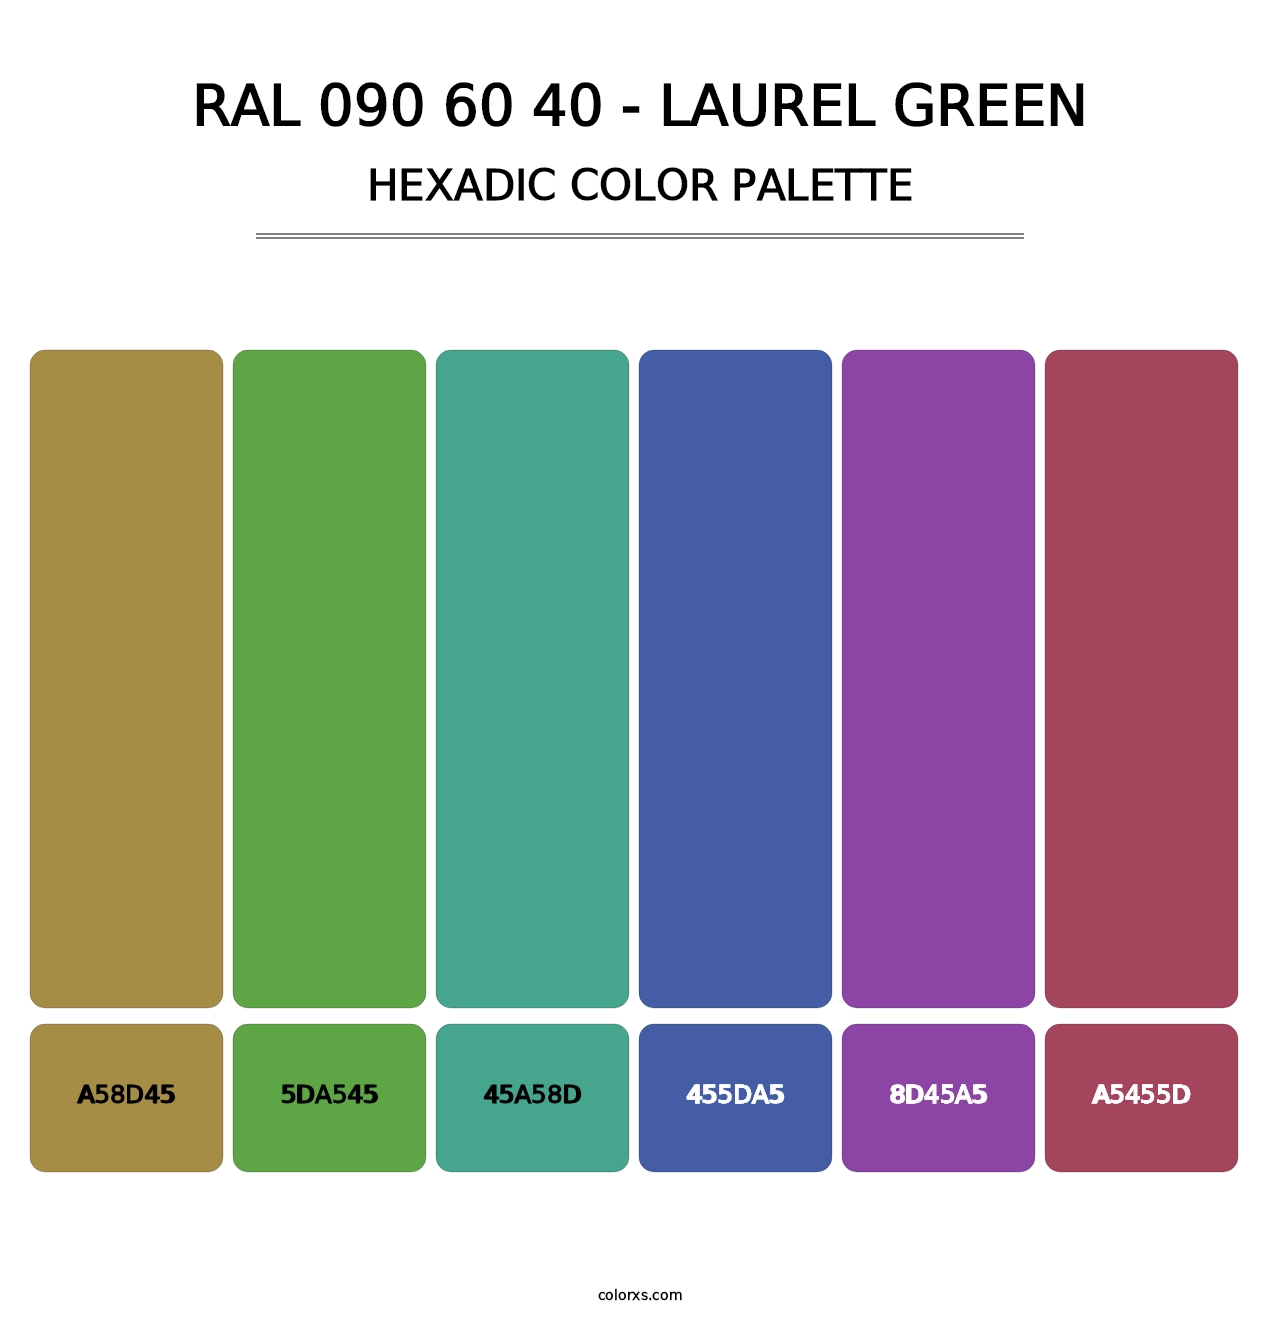 RAL 090 60 40 - Laurel Green - Hexadic Color Palette